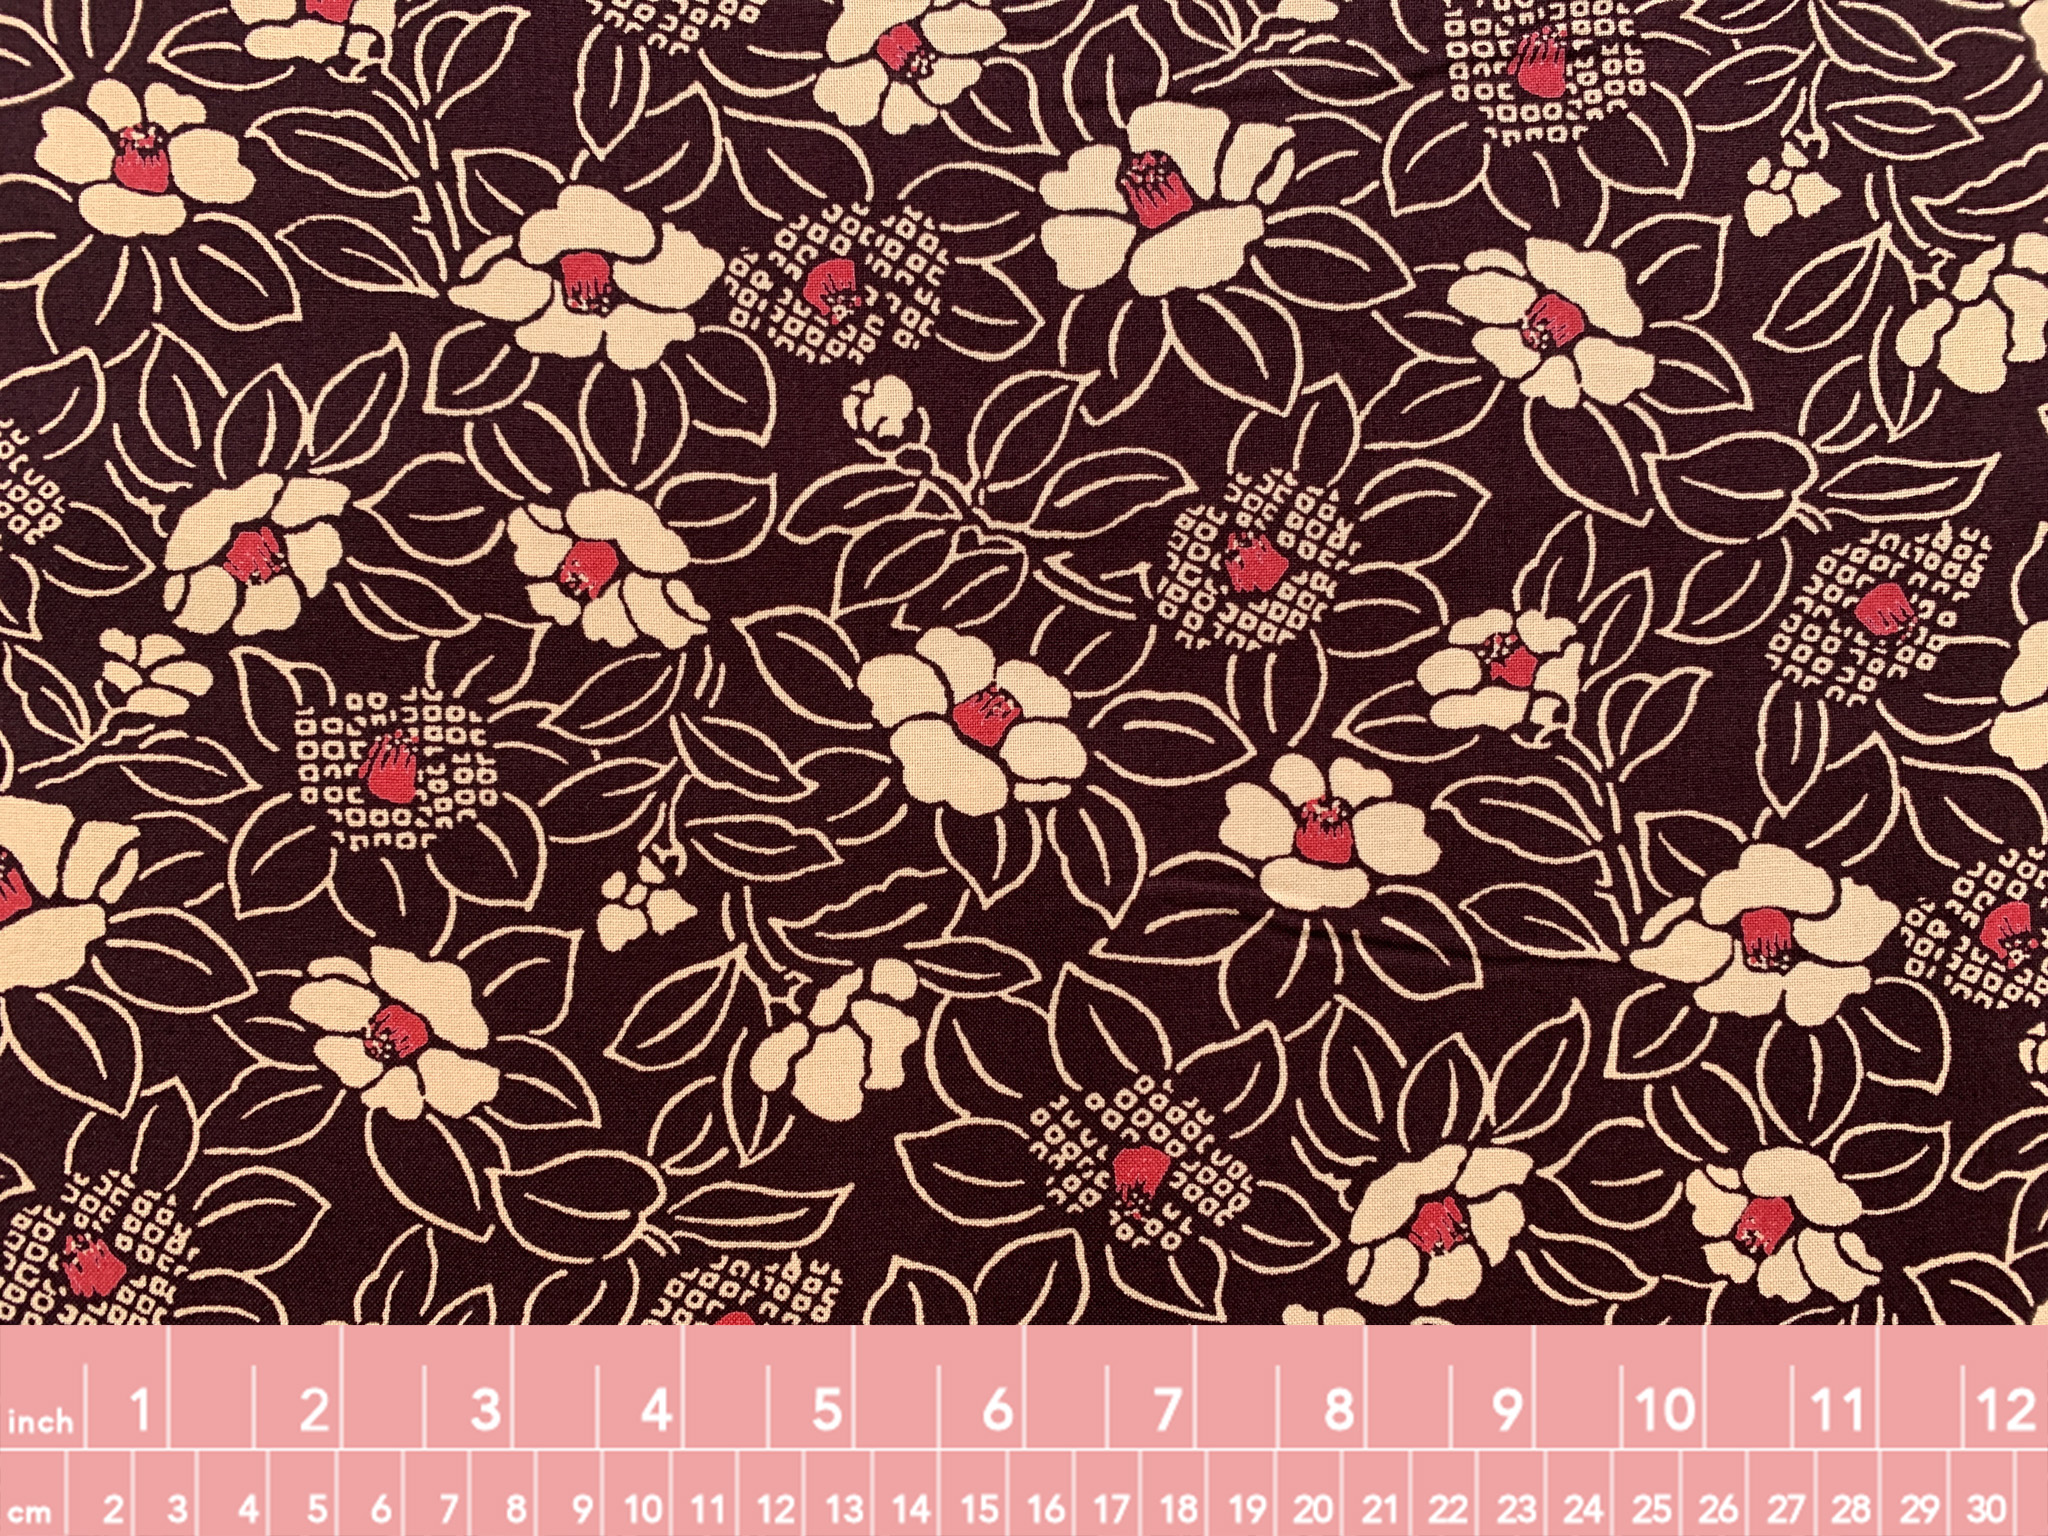 Brown - Page 3 of 22 - Stonemountain & Daughter Fabrics